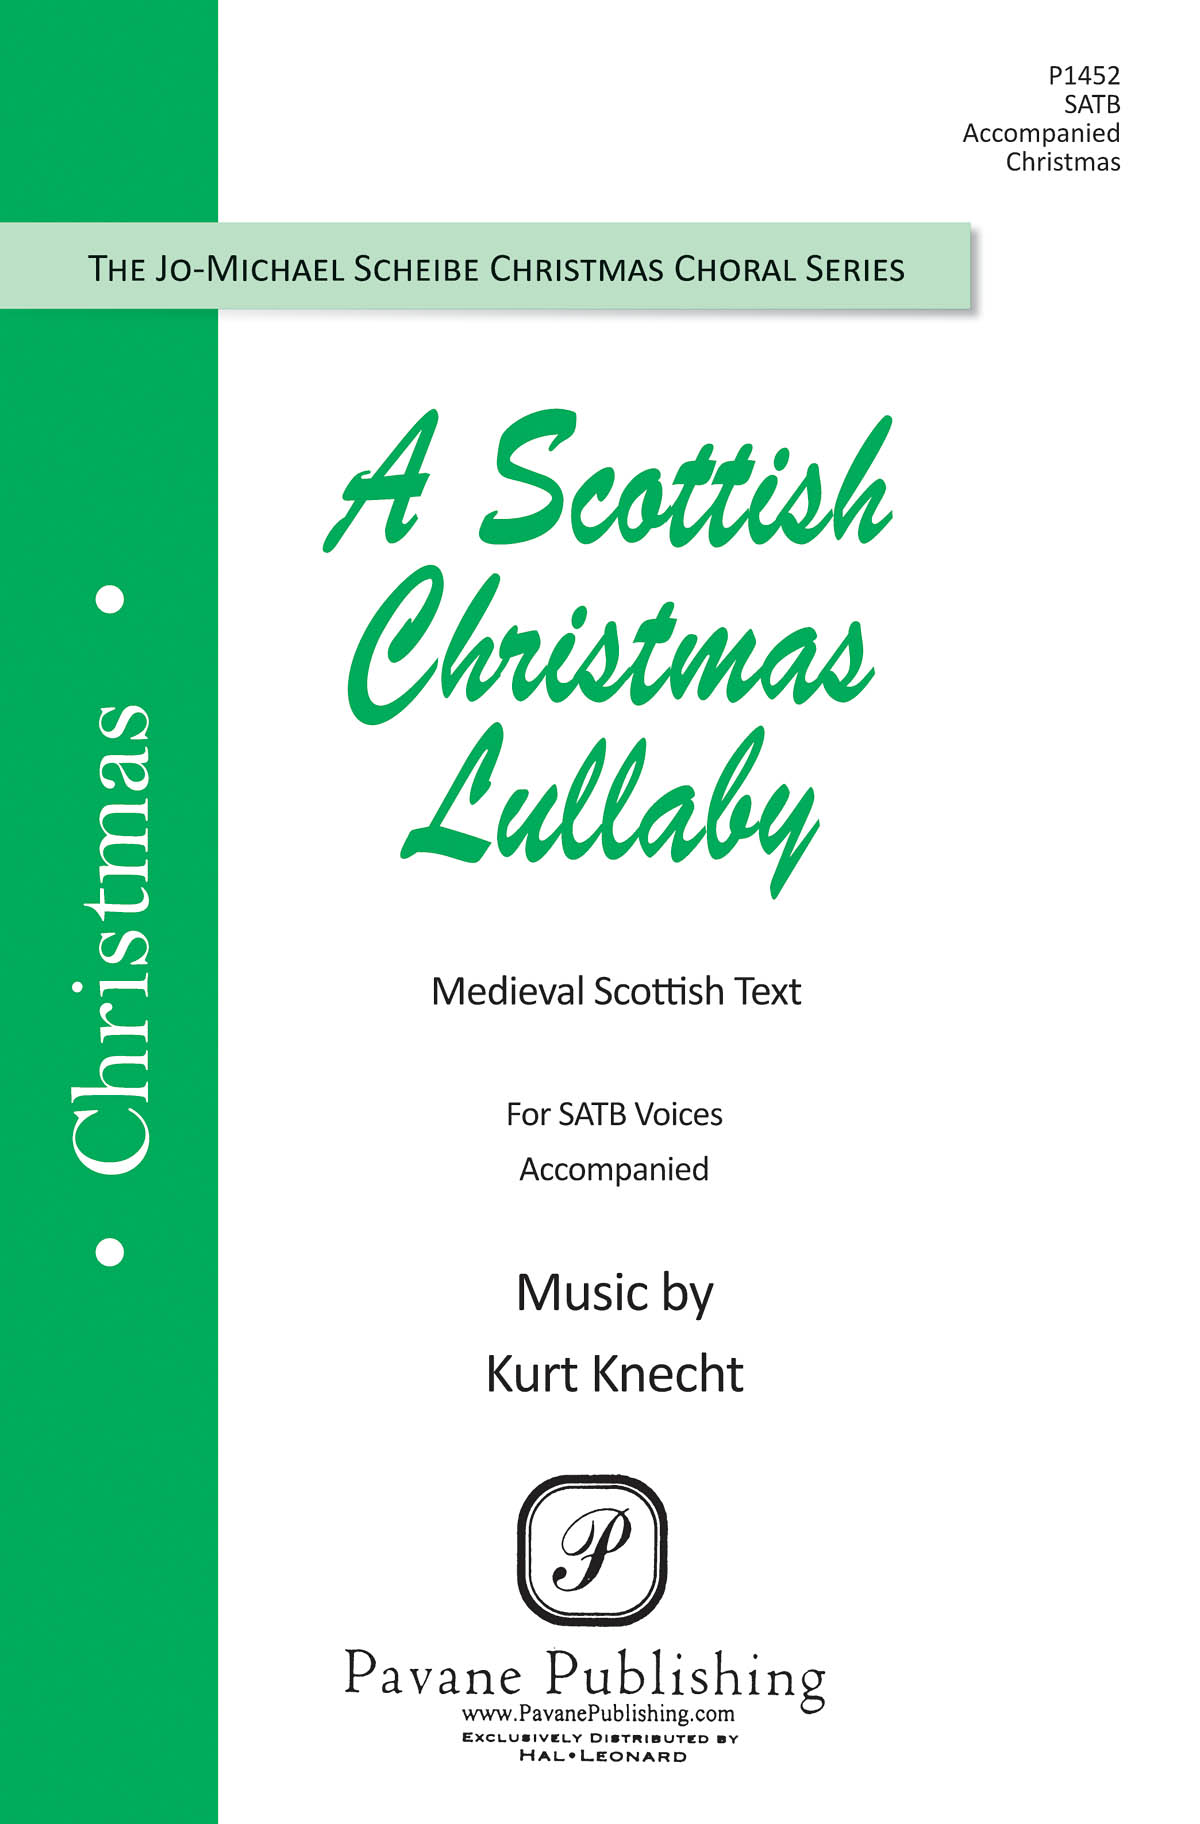 Kurt Knecht: A Scottish Christmas Lullaby: Mixed Choir a Cappella: Vocal Score